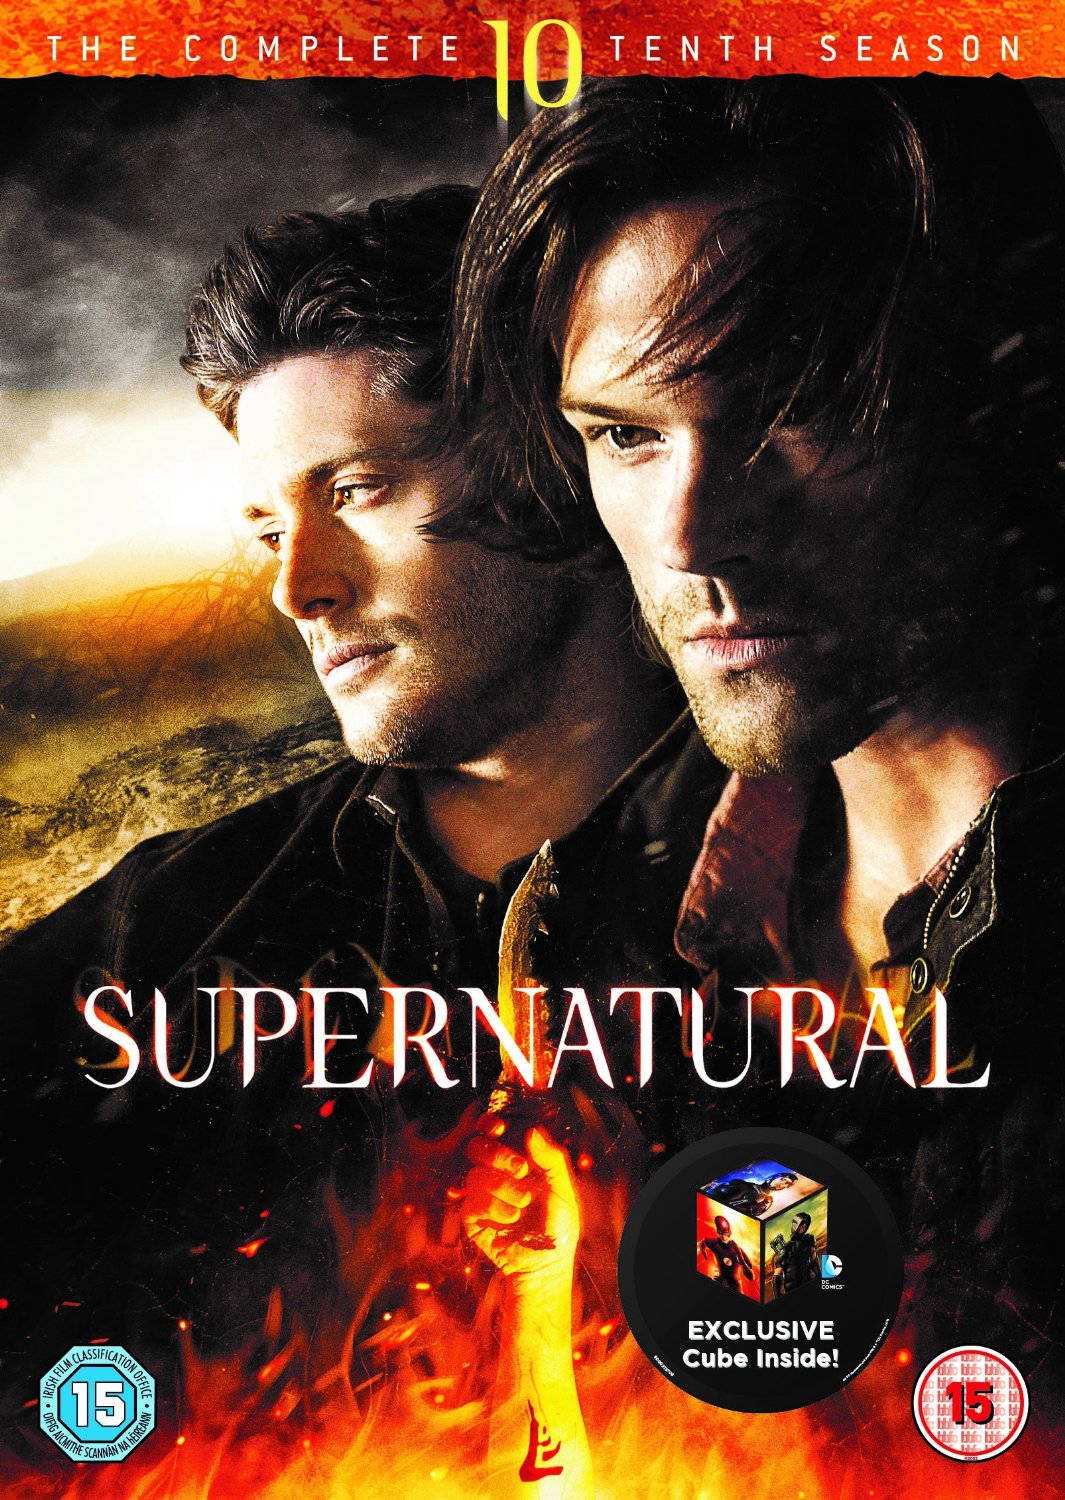 Supernatural Season 10 DVD Review